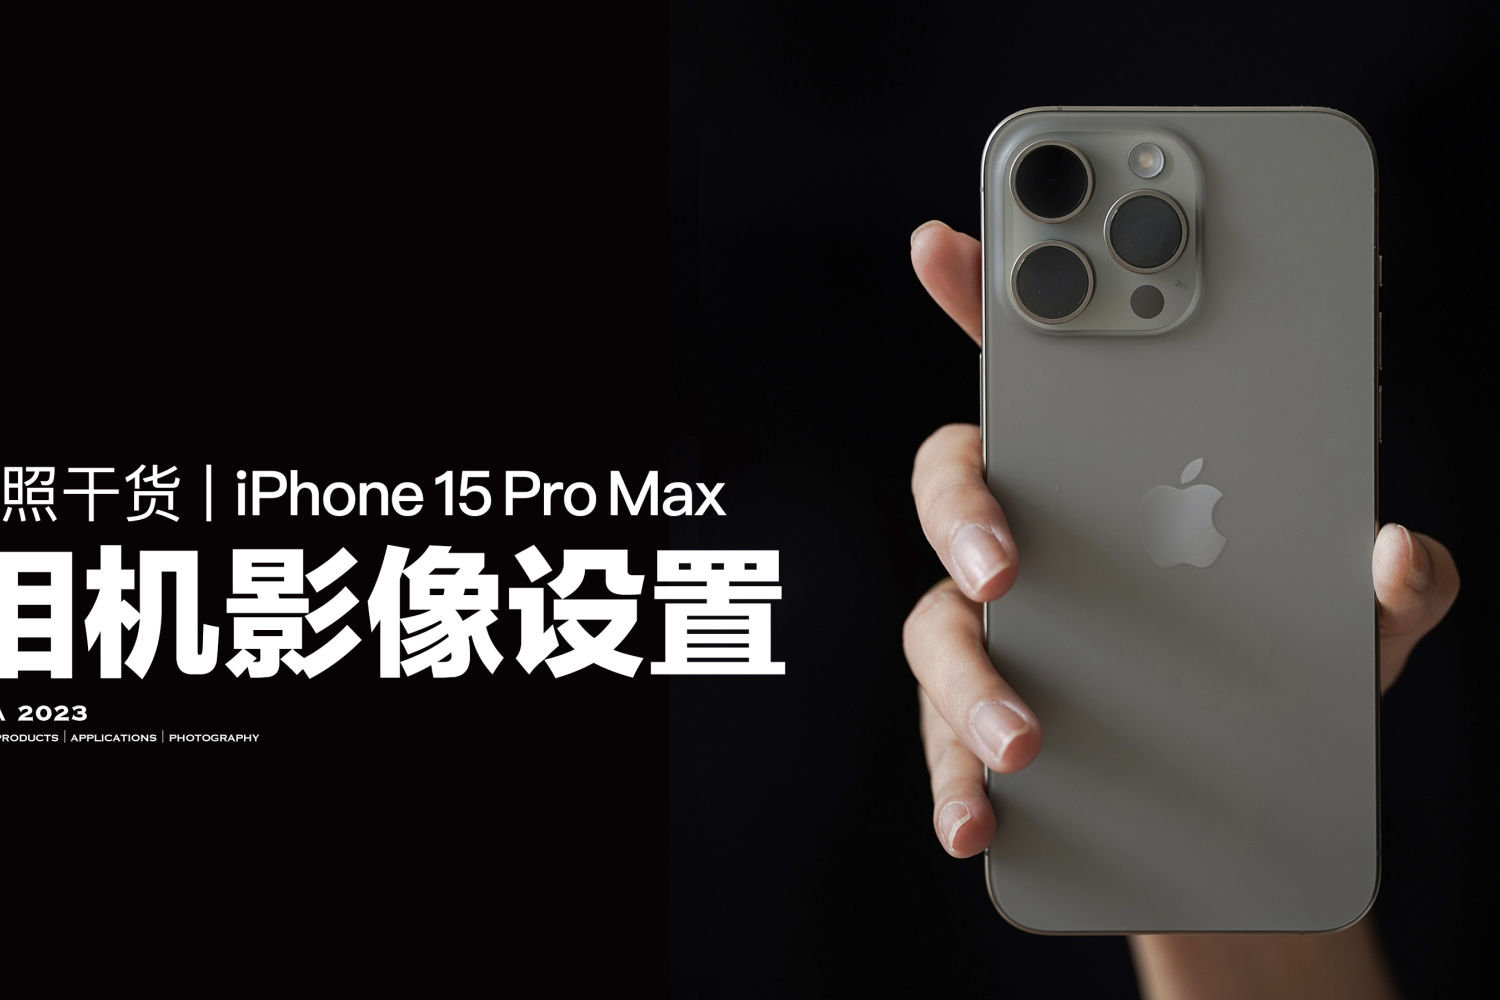 拍照干货丨iPhone 15 Pro Max相机设置